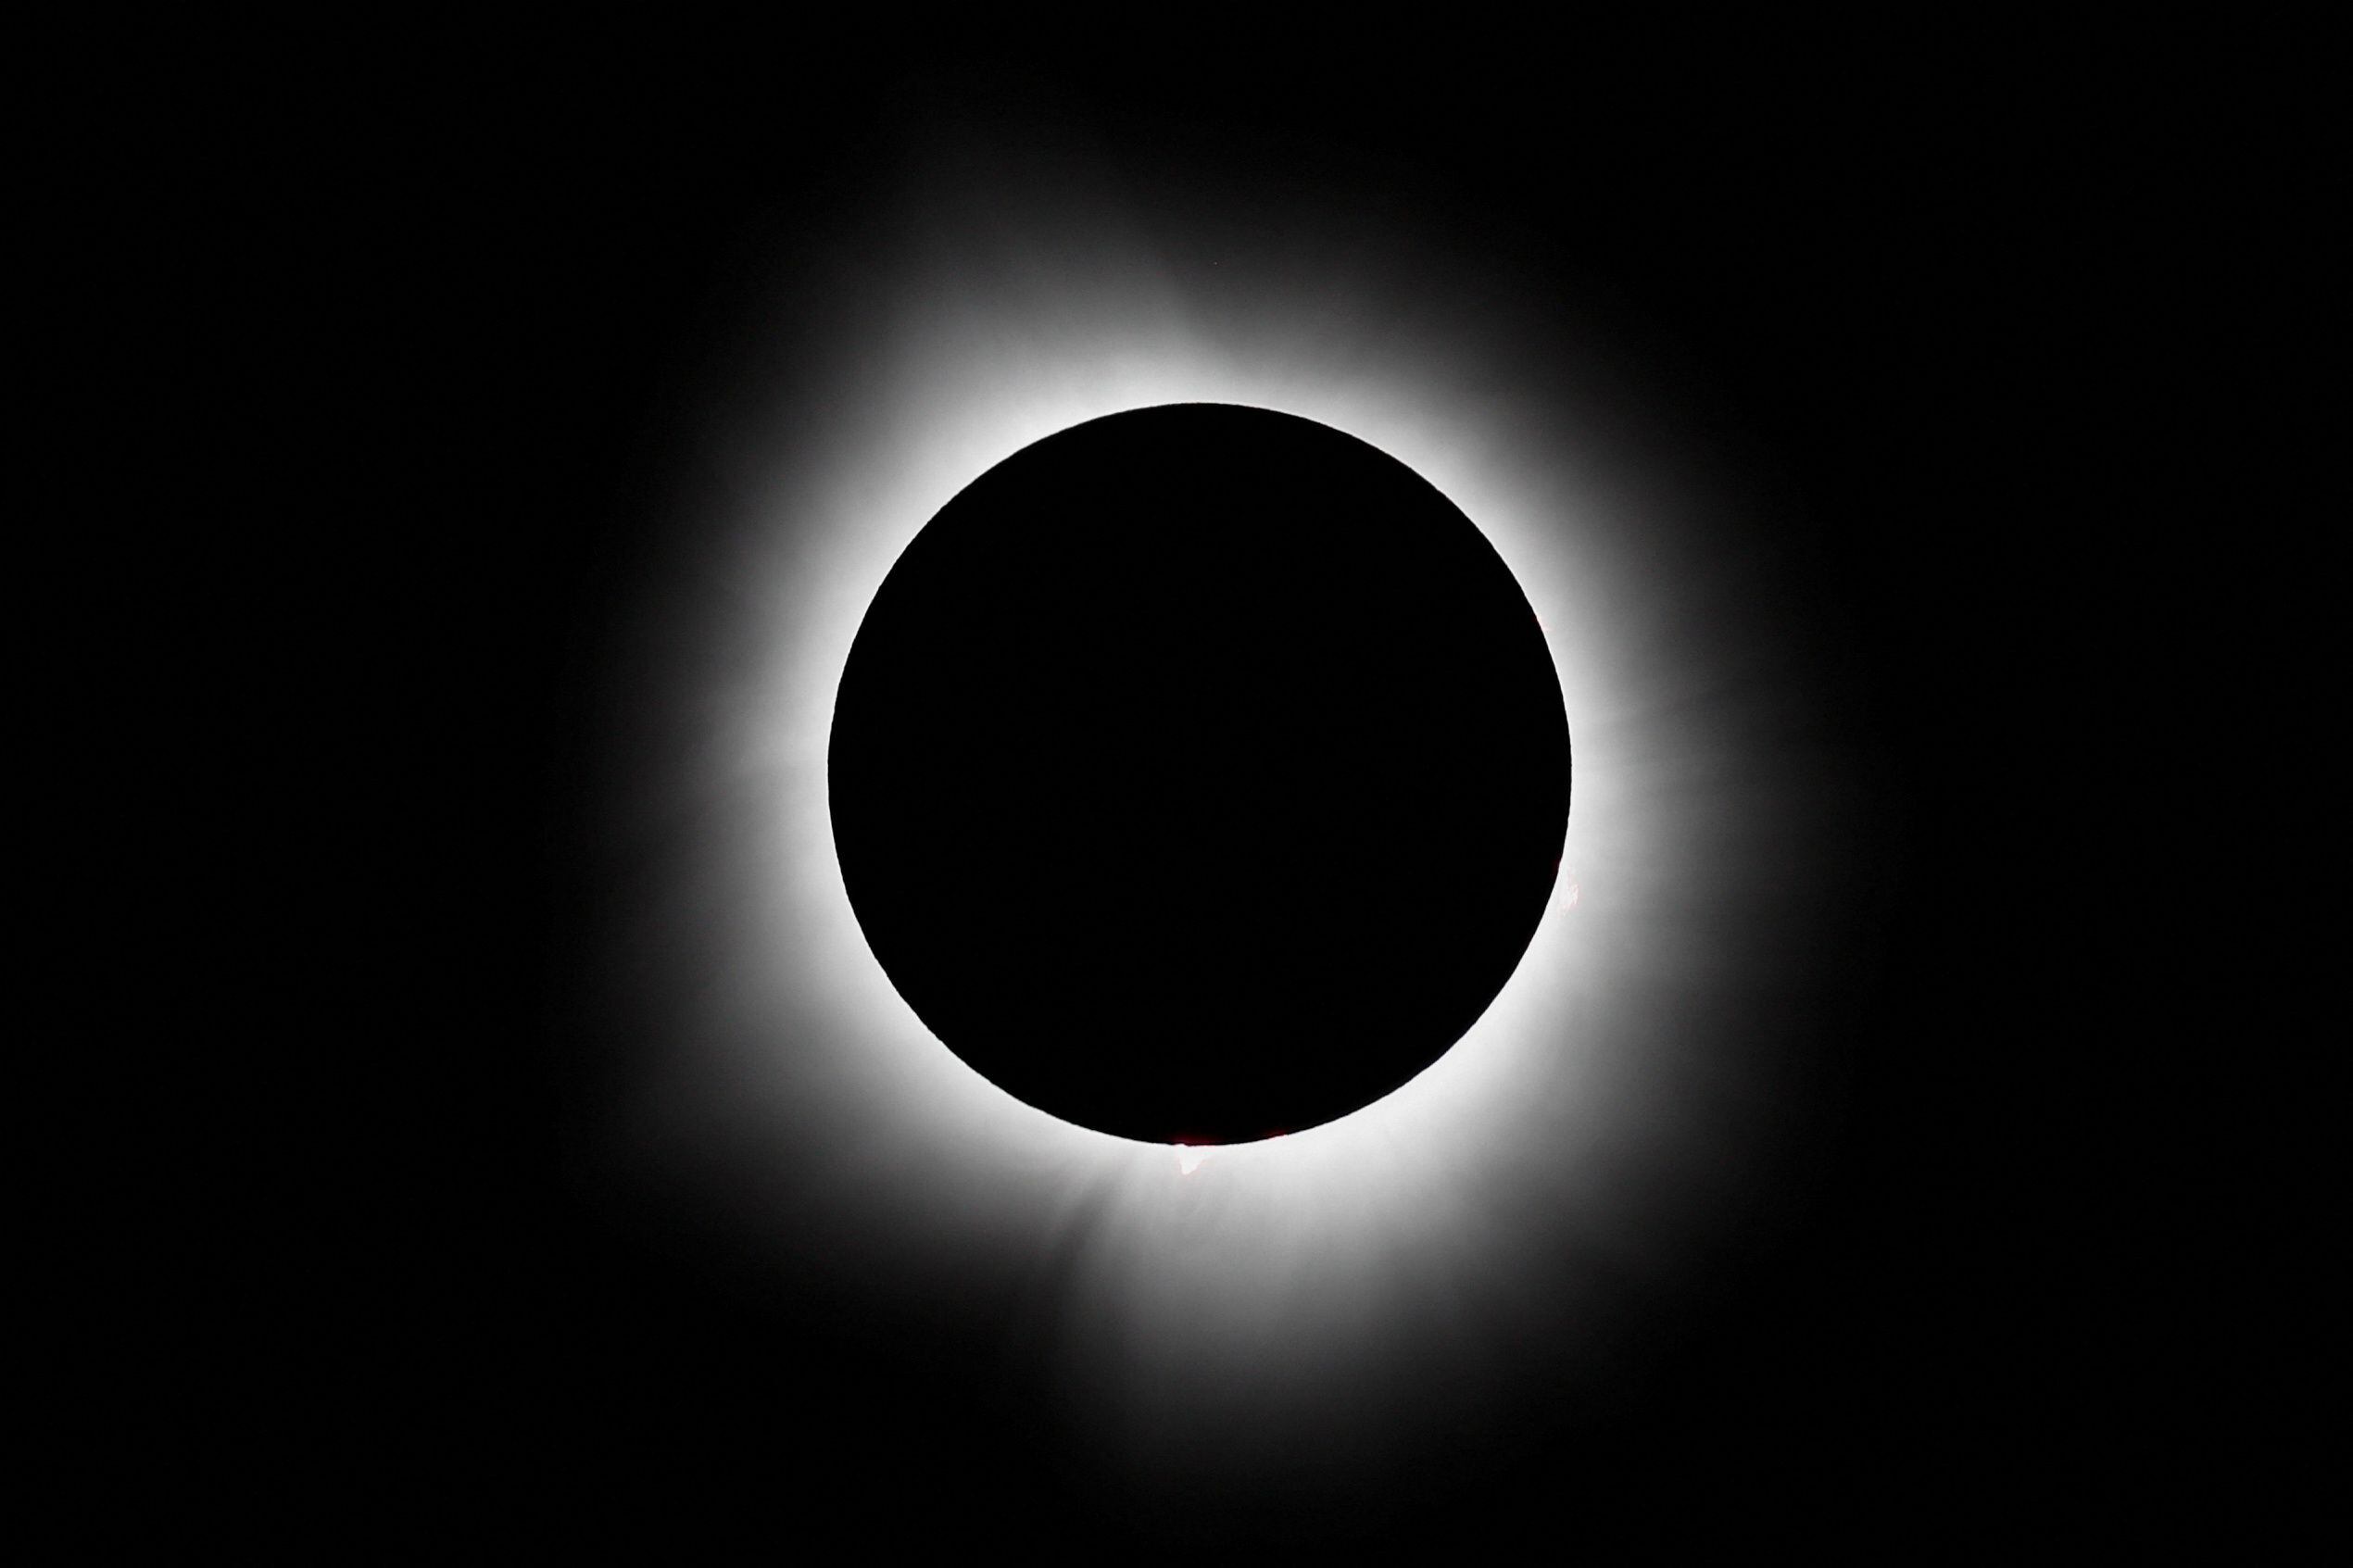 La cercanía de la Luna a la Tierra durante este eclipse permitió una visión completa de la corona solar, coincidiendo con un período de alta actividad magnética del Sol /REUTERS/Evelyn Hockstein